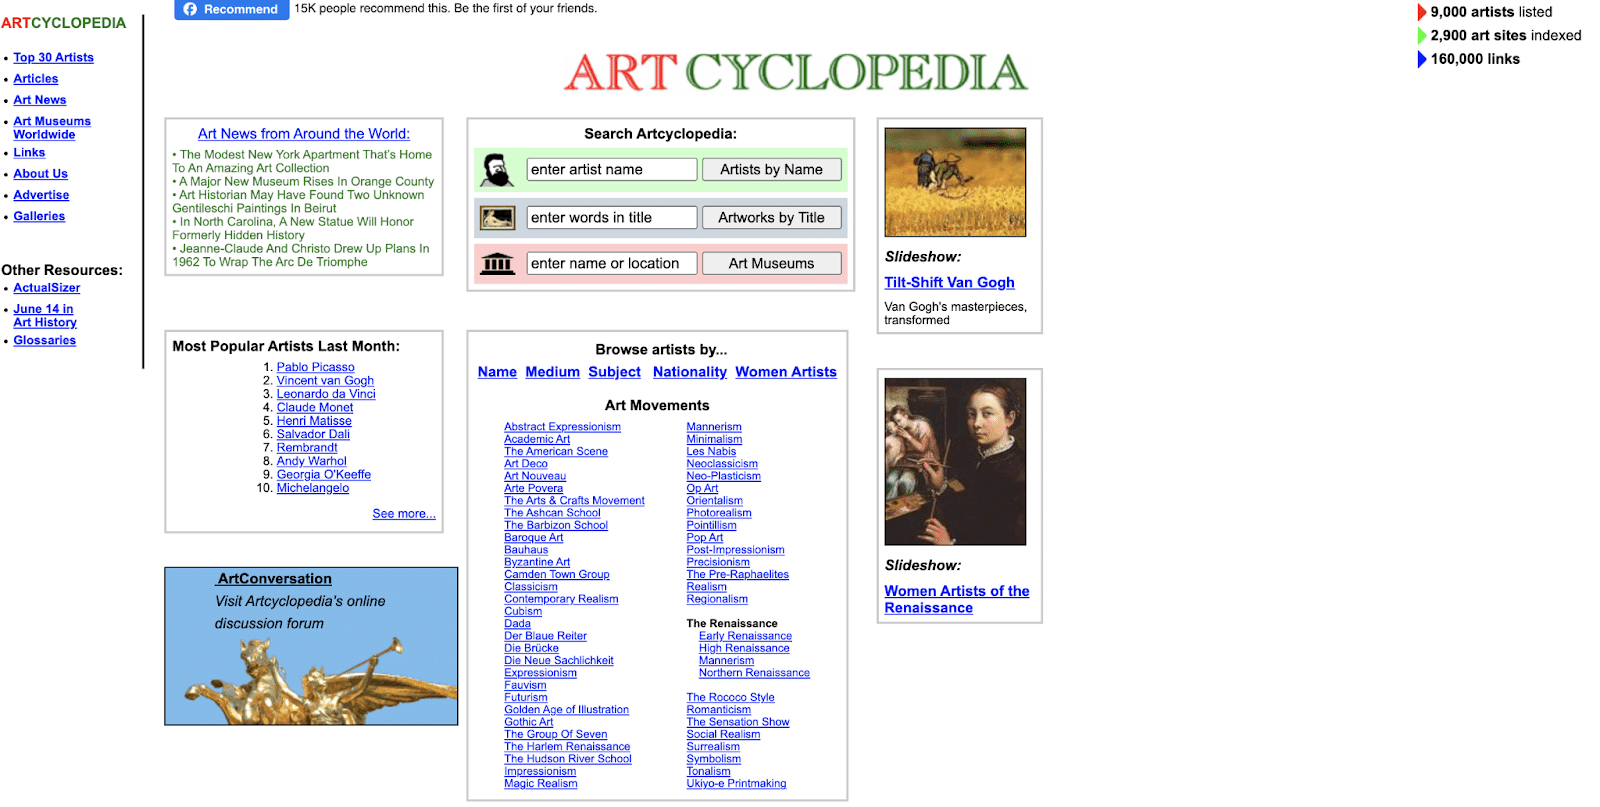 Les beaux-arts ne sont pas difficiles à trouver lorsque vous avez Artcyclopedia.